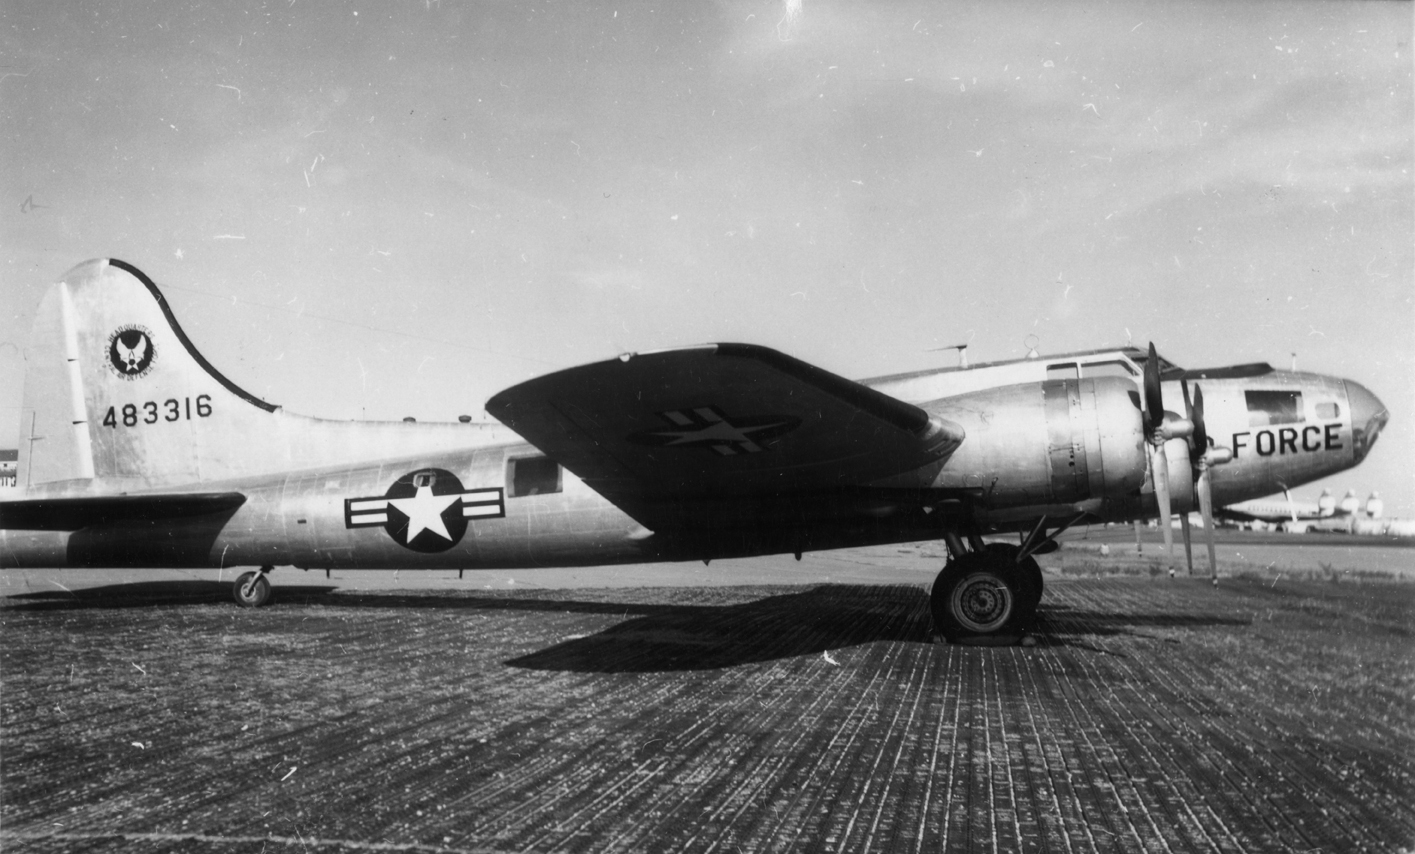 B-17 44-83316